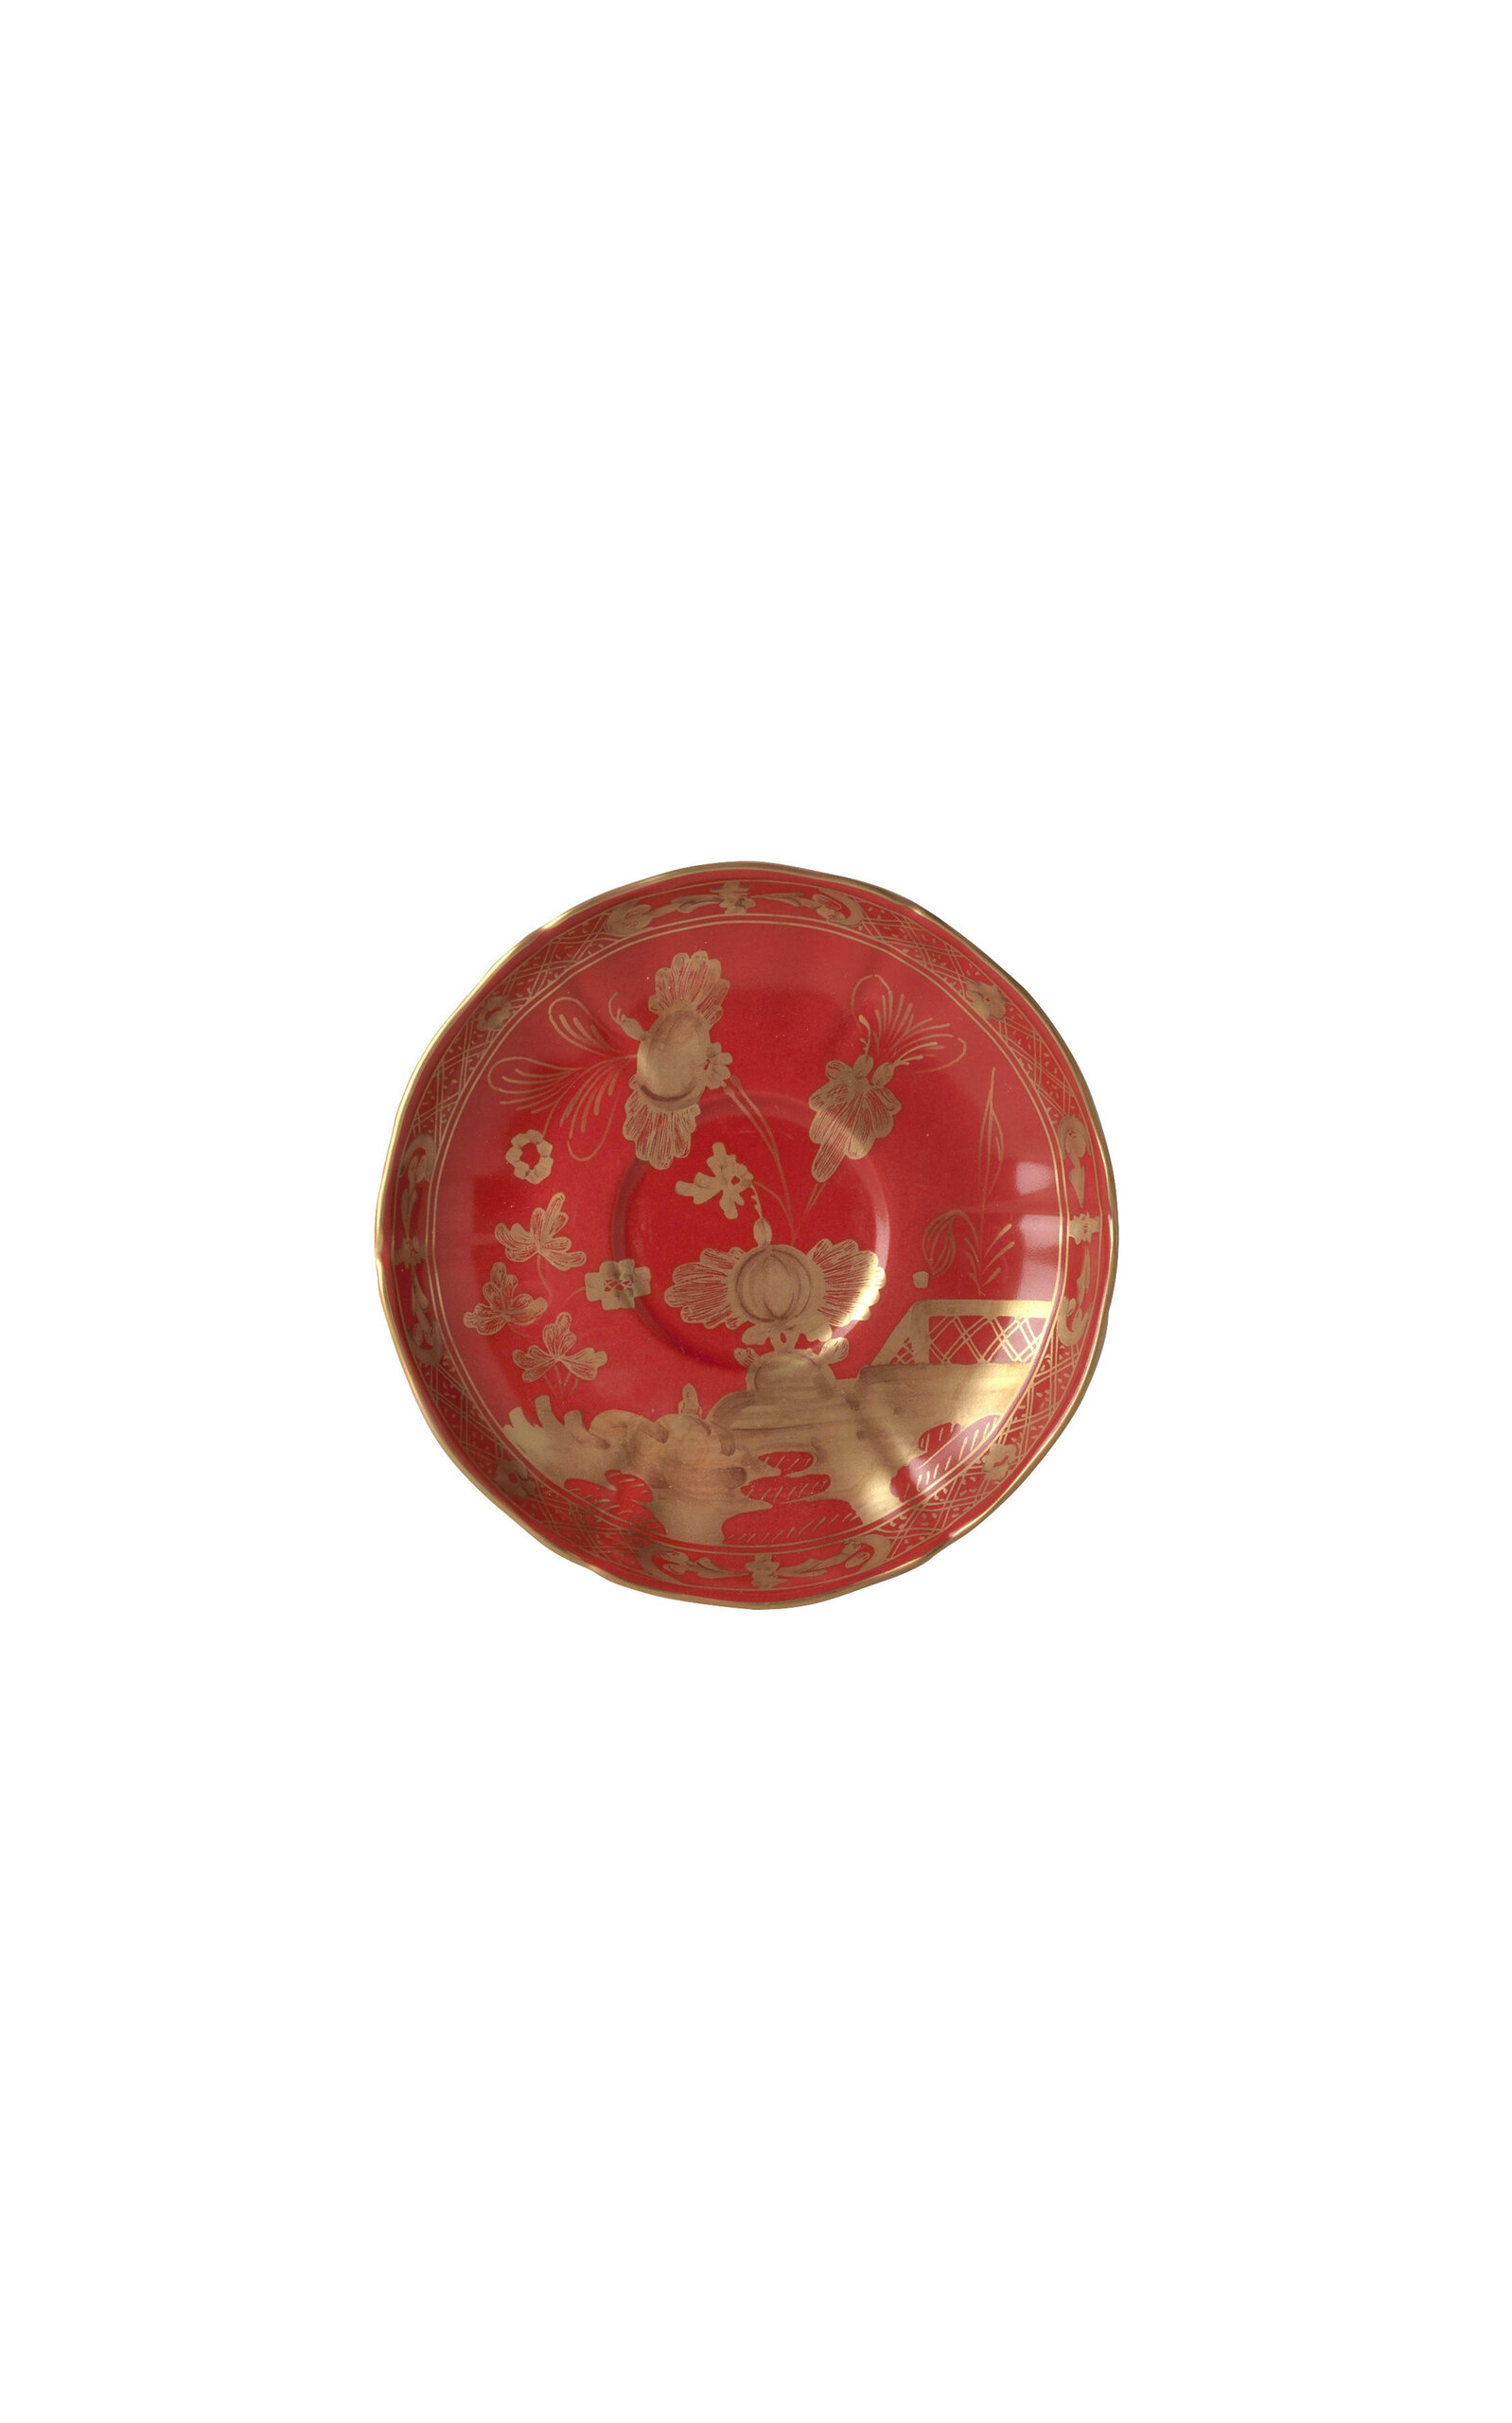 Ginori 1735 Antico Doccia Porcelain Tea Saucer In Red